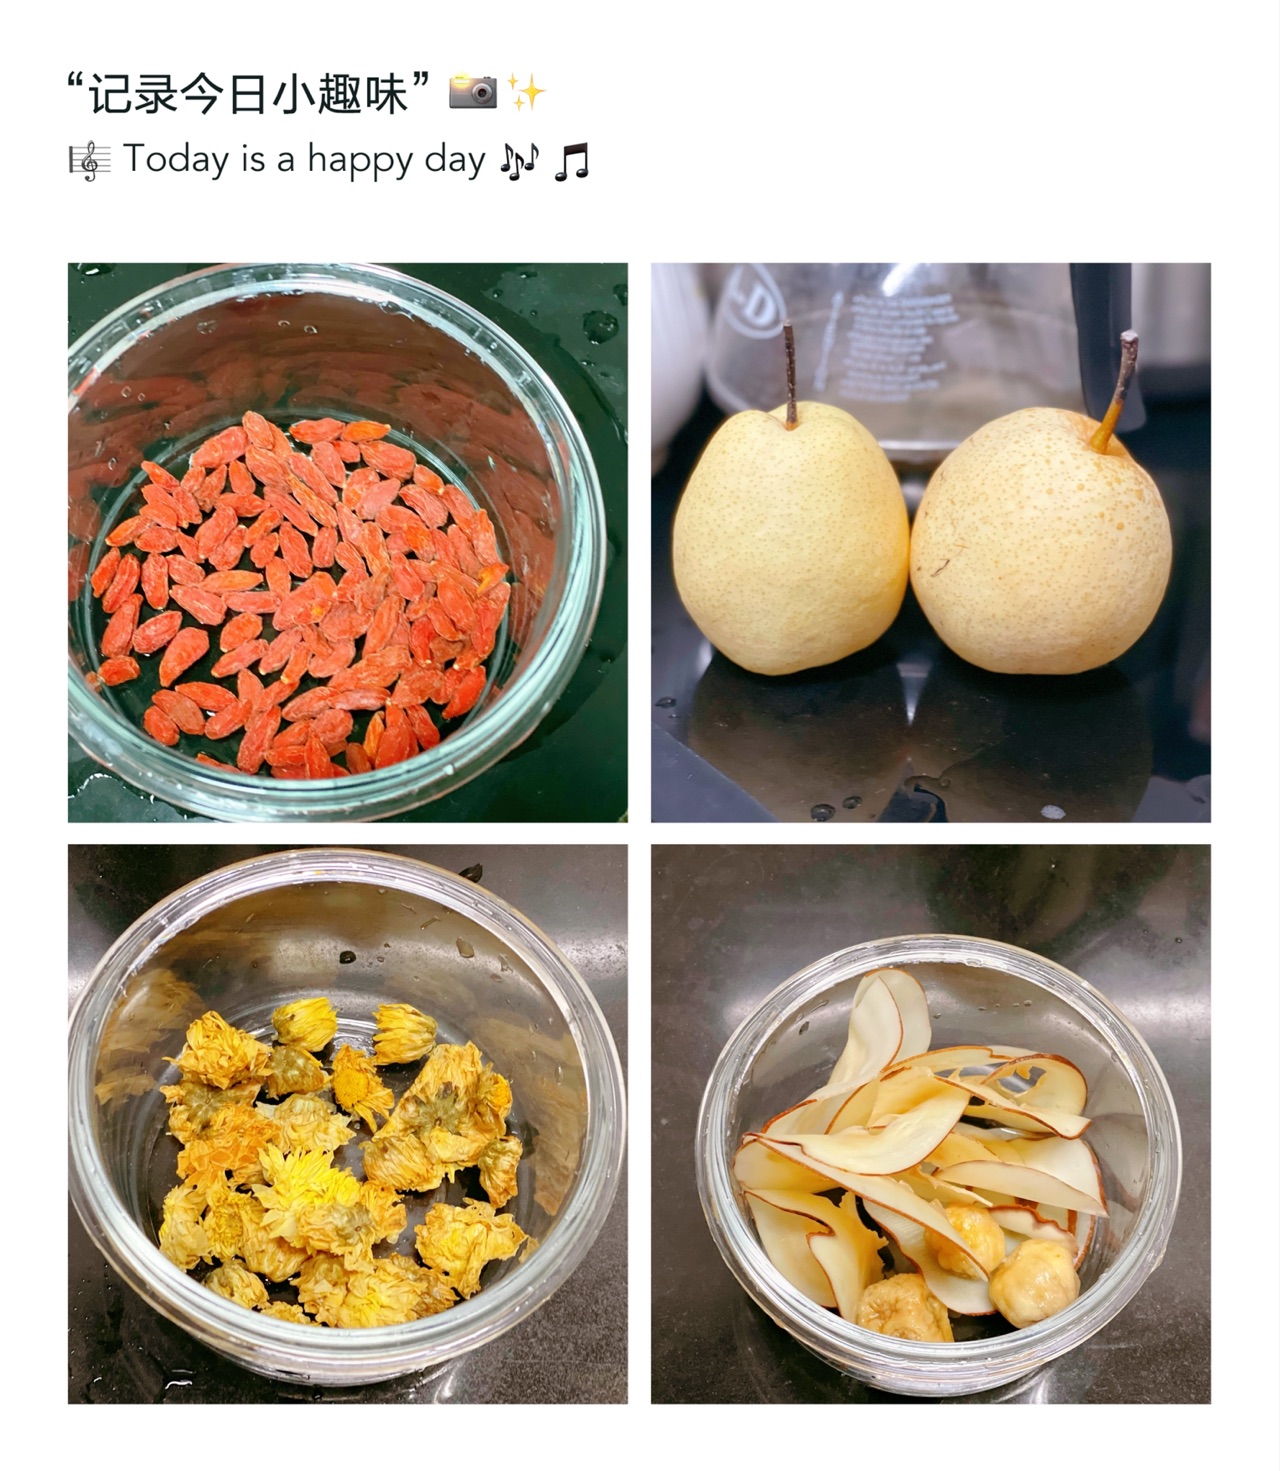 南北杏海底椰煲雪梨食譜、做法 | 文迪私人廚房 Mandy's Kitchen的Cook1Cook食譜分享